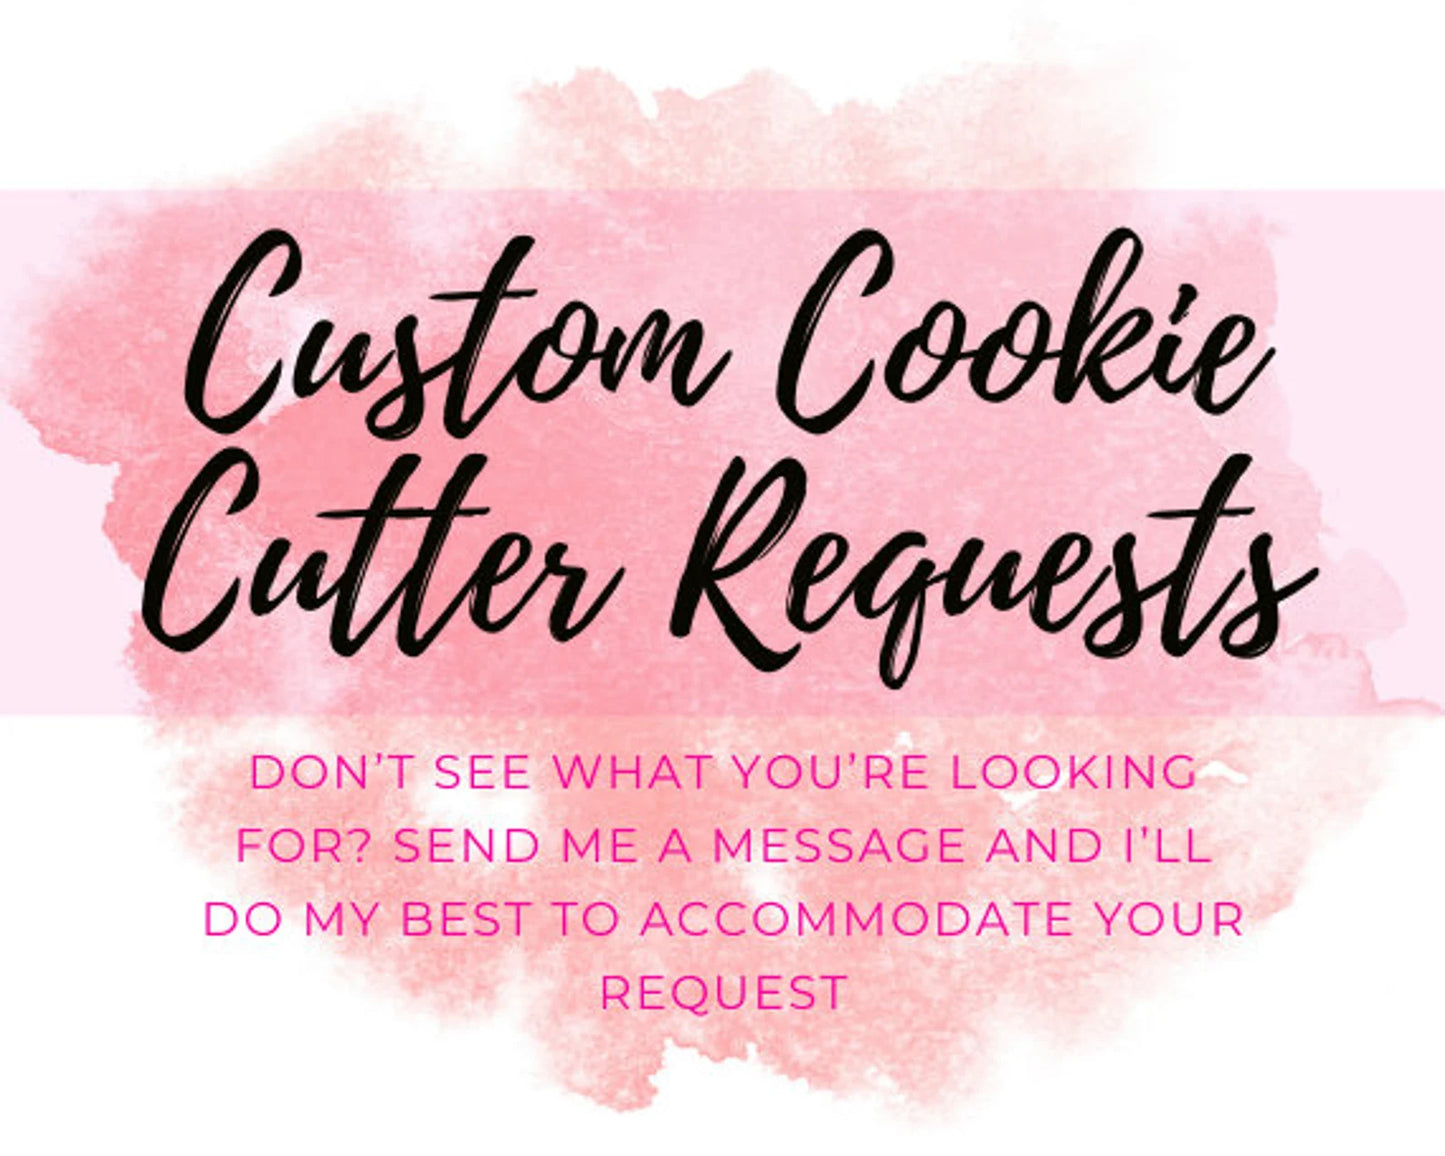 Cornucopia Cookie Cutter